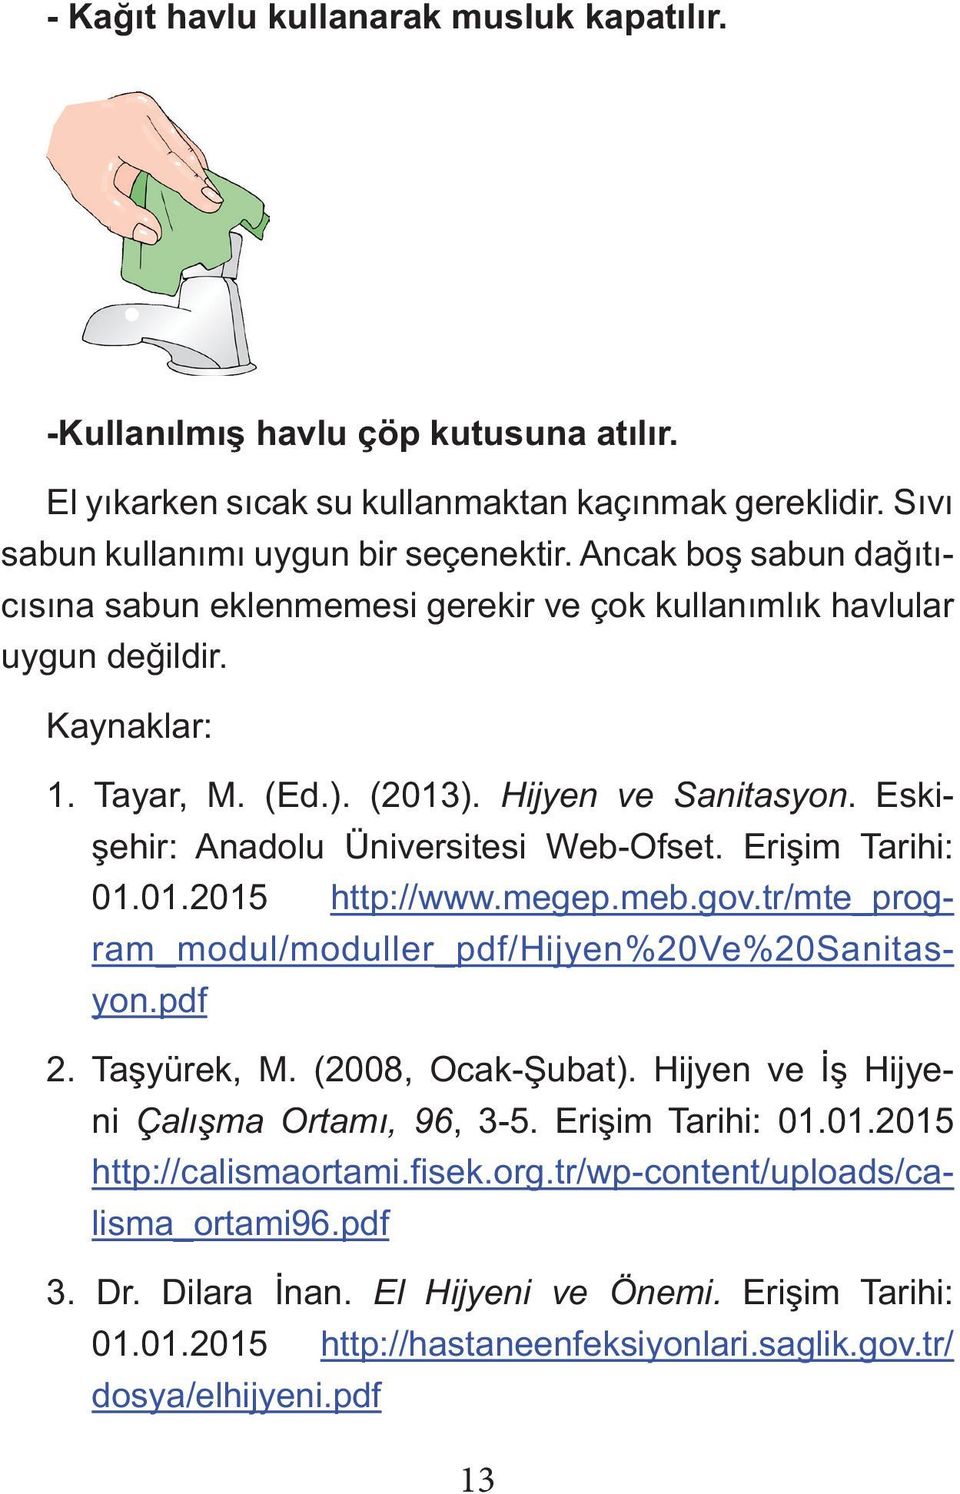 Eskişehir: Anadolu Üniversitesi Web-Ofset. Erişim Tarihi: 01.01.2015 http://www.megep.meb.gov.tr/mte_program_modul/moduller_pdf/hijyen%20ve%20sanitasyon.pdf 2. Taşyürek, M. (2008, Ocak-Şubat).